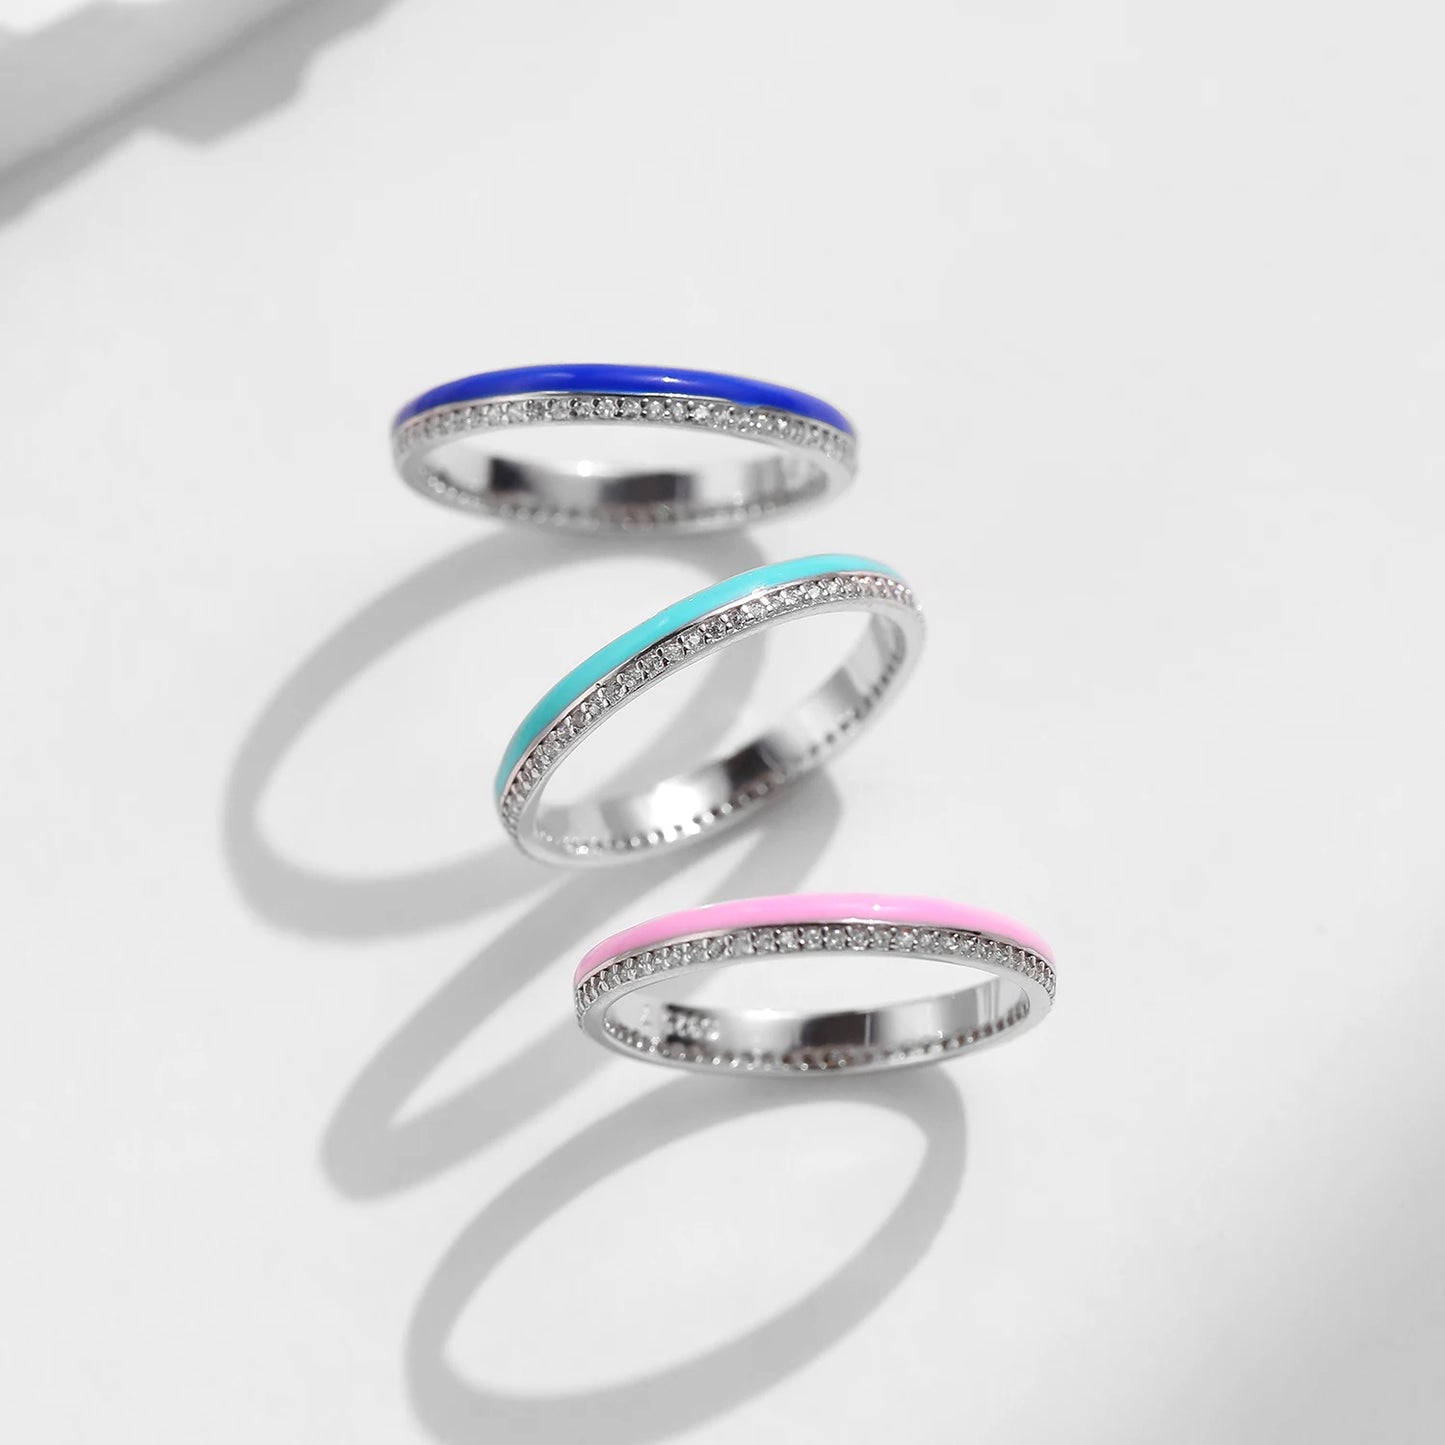 Klein Colorful Enamel Ring